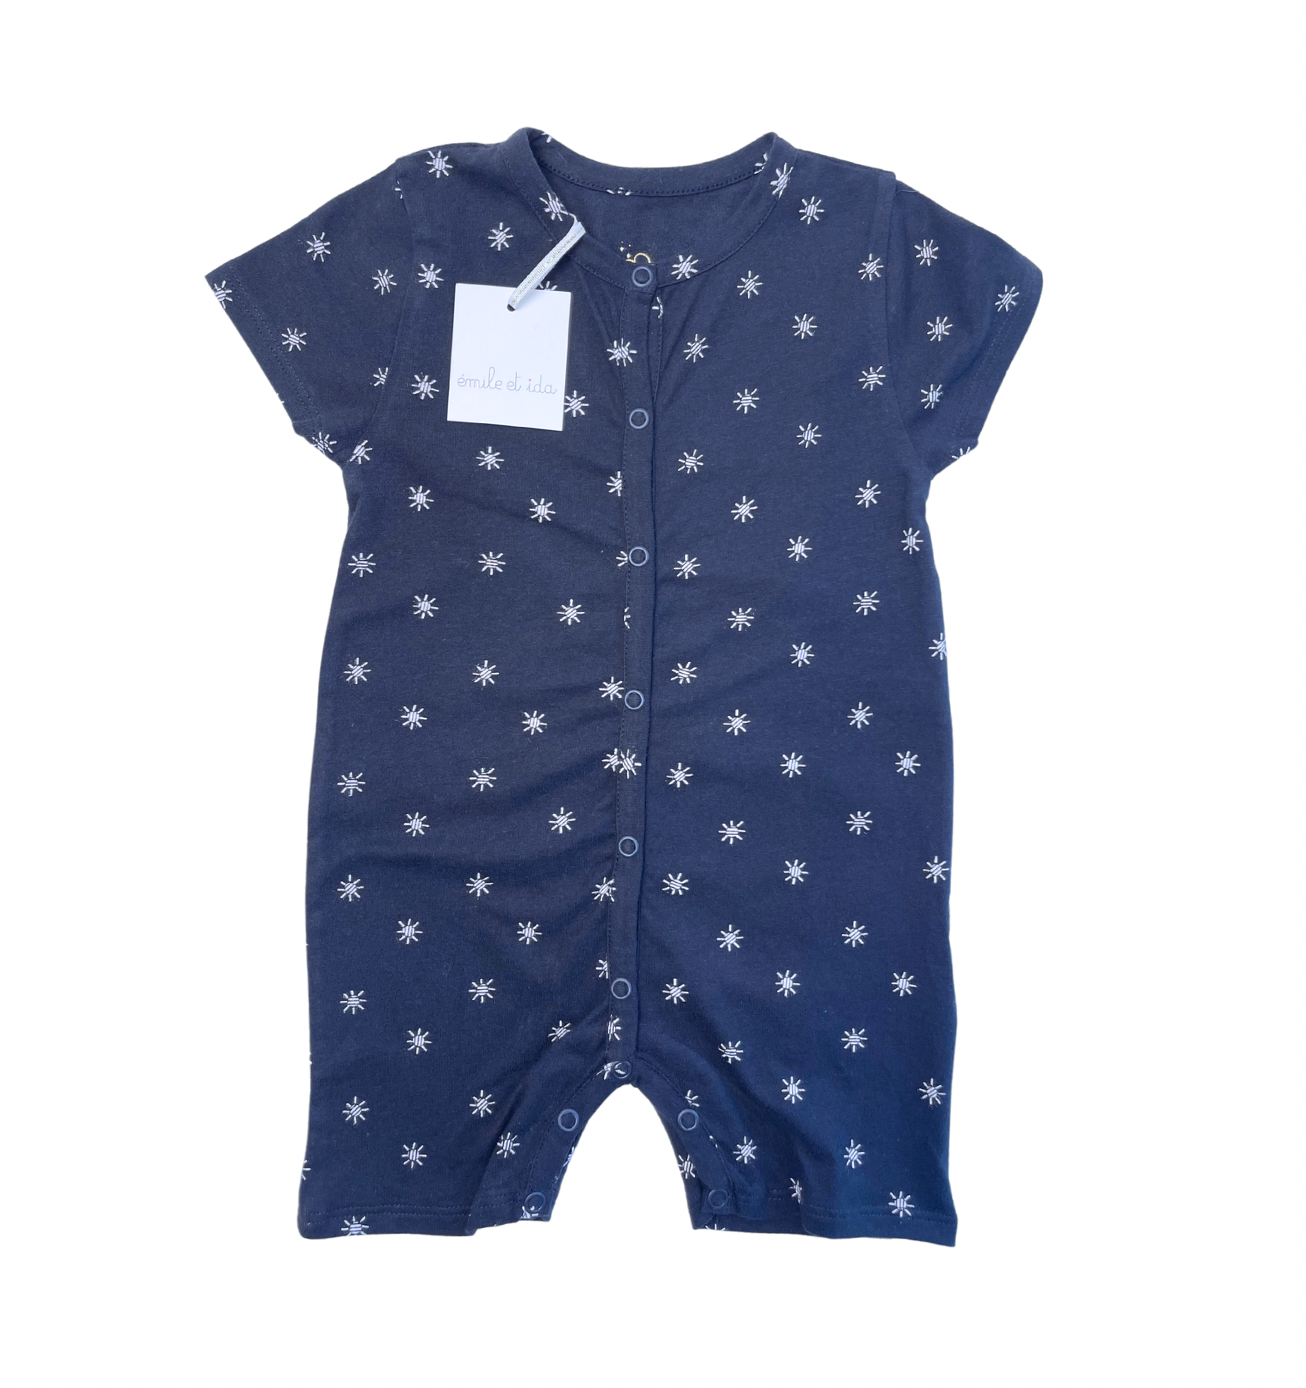 EMILE ET IDA - Pyjama bleu marine motif soleils - 12 mois